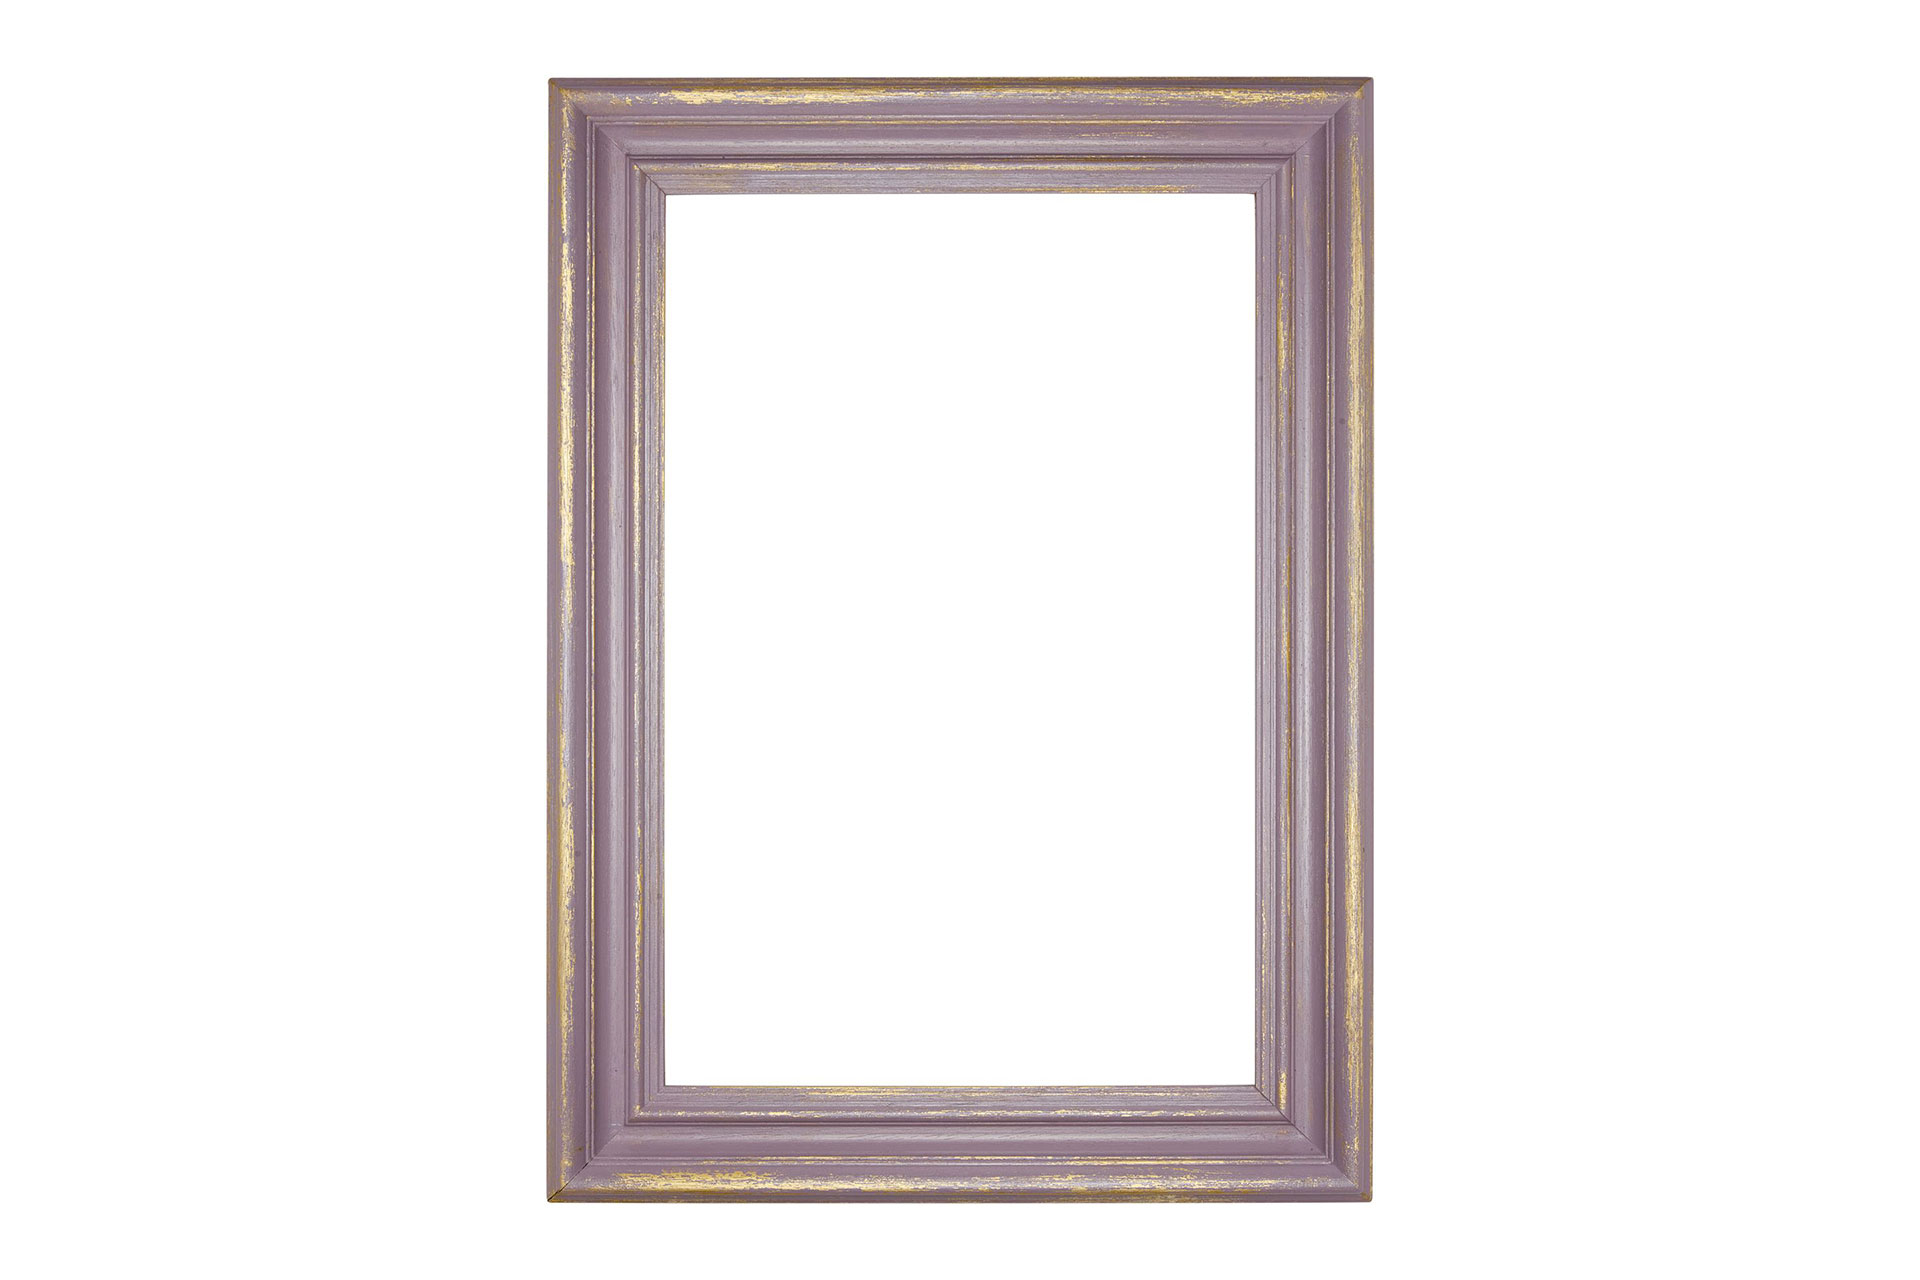 Wandspiegel Modell Rochefort, Gold/Pastellviolett , Form: rechteckig Herstellung: by ASR-Rahmendesign Material: Holz, Wandspiegel, Shabby-Chic, Ansicht, Ansicht Rahmen